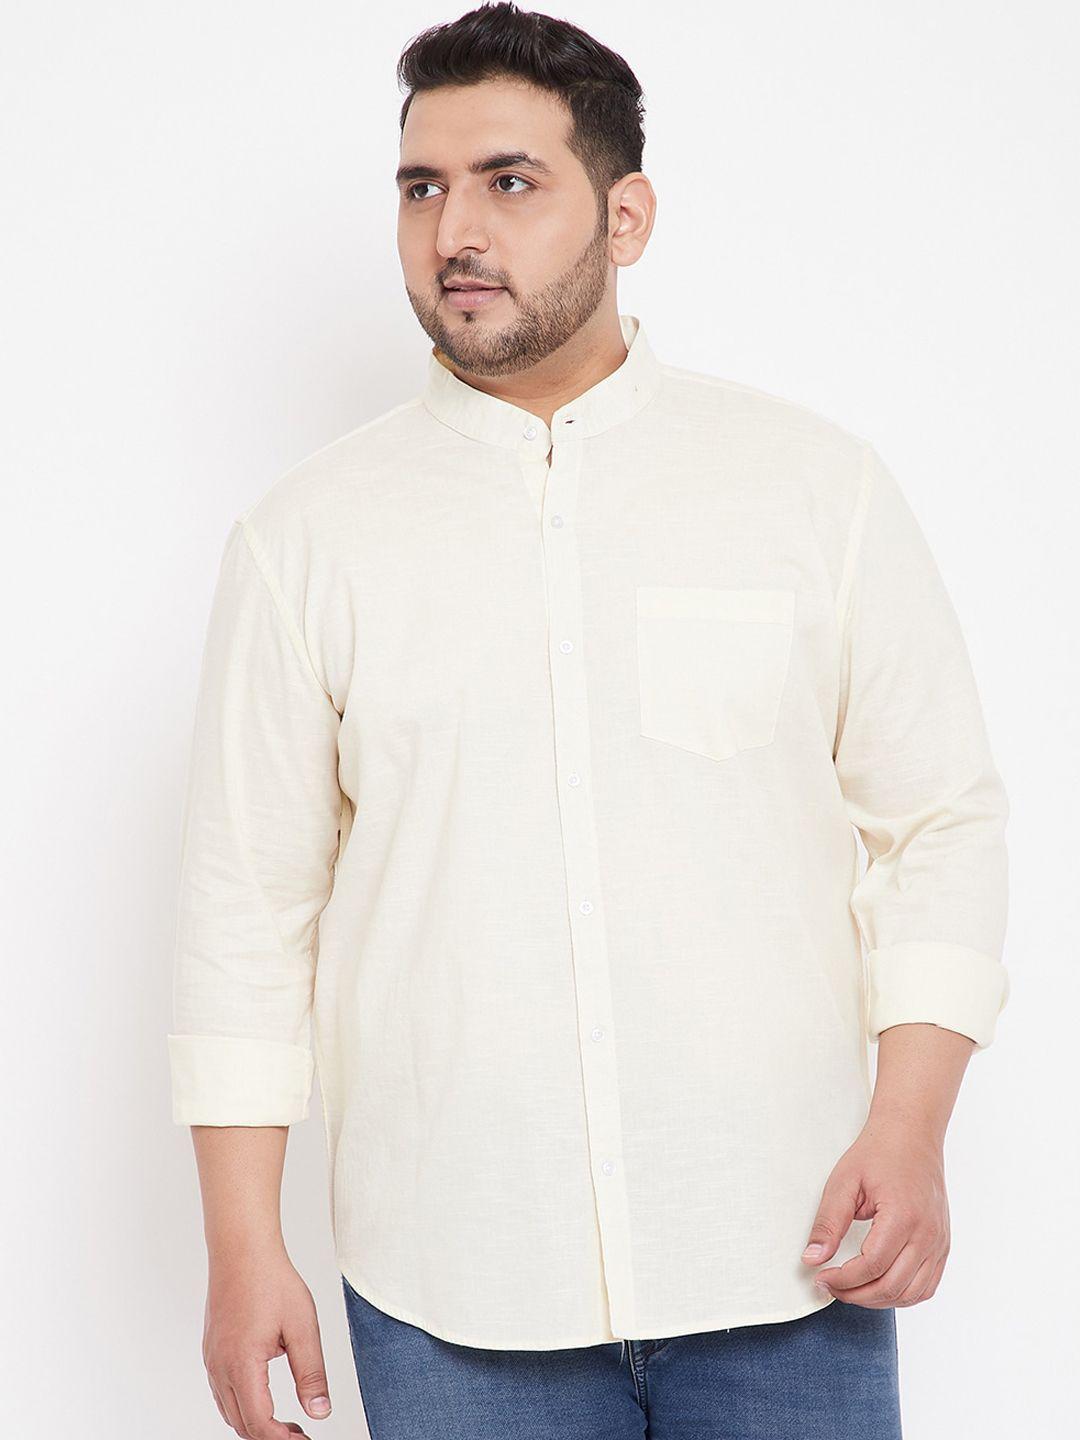 instafab-plus-men-cream-coloured-regular-fit-solid-plus-size-casual-shirt